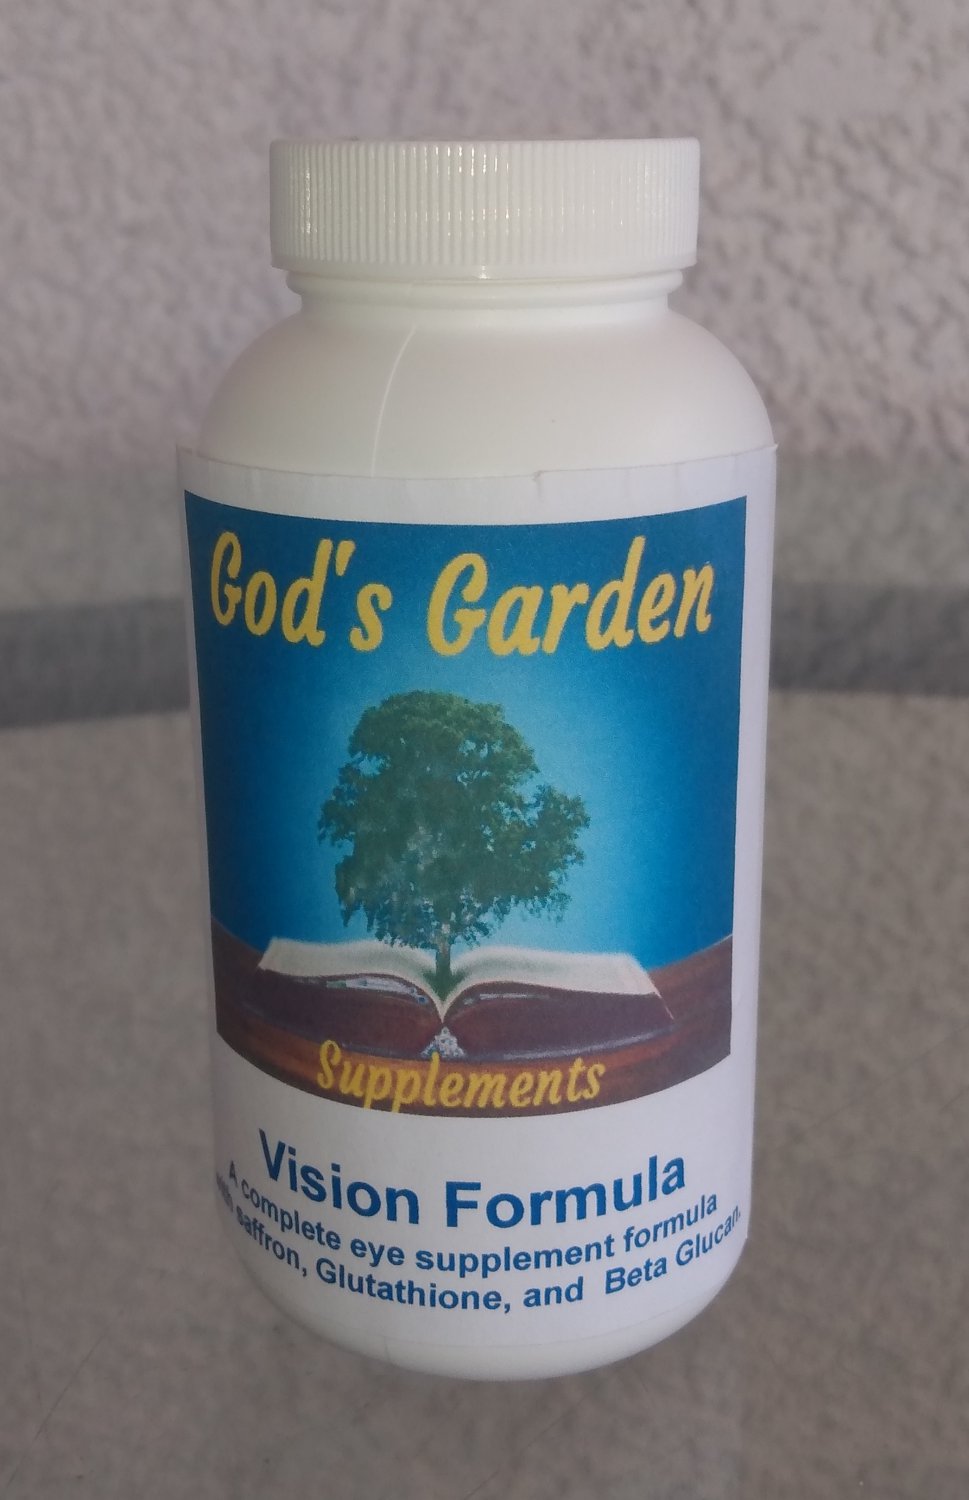 3 God's Garden Vision Formula bottles